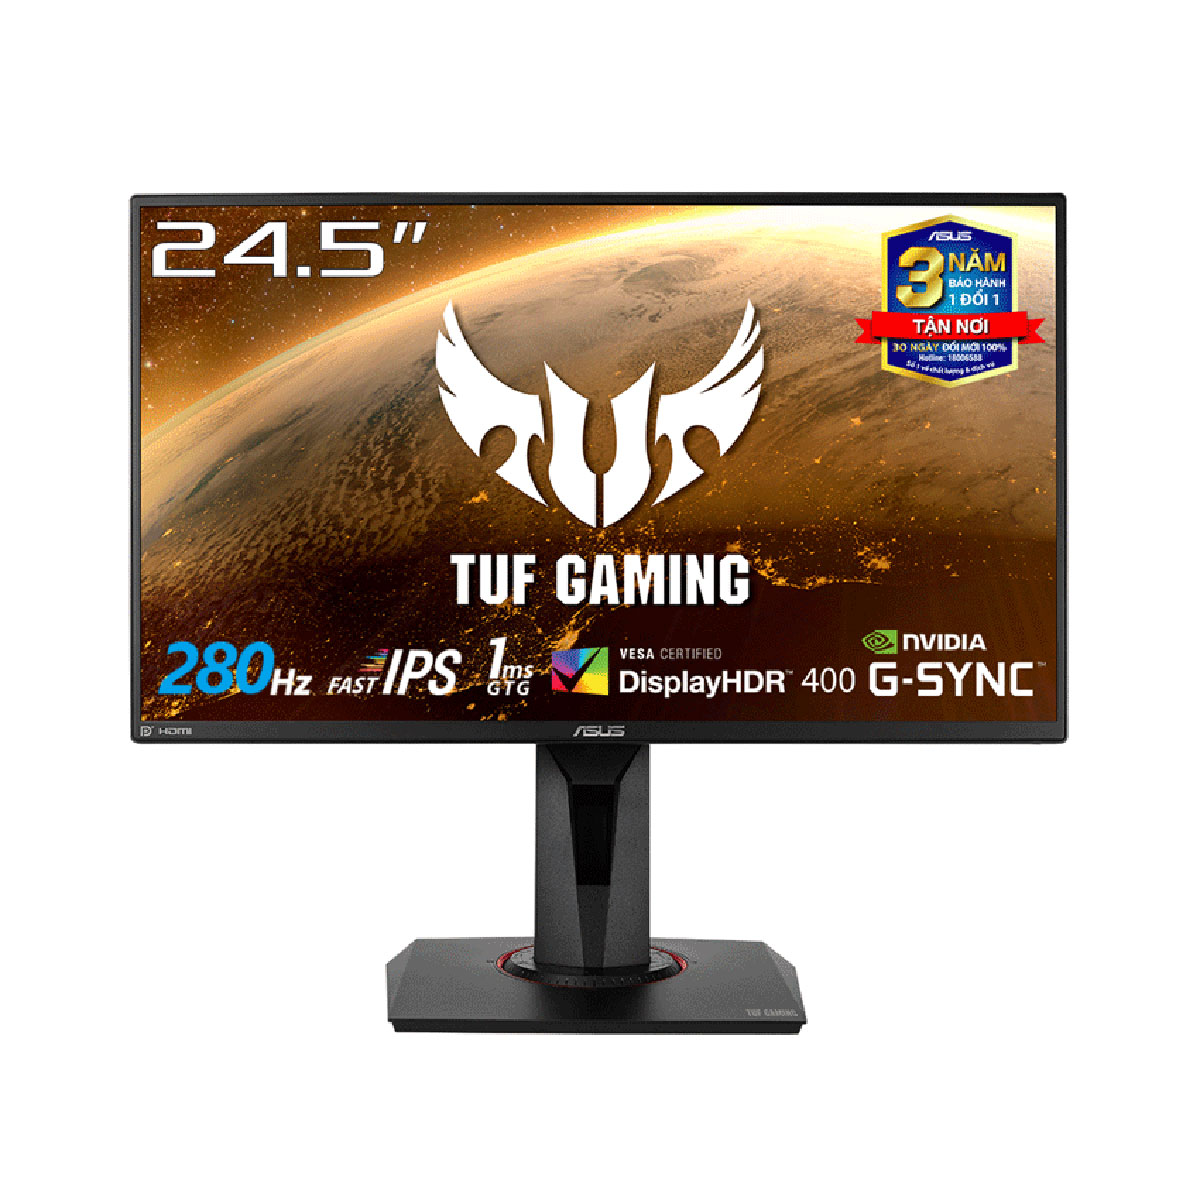 Màn hình máy tính Gaming Asus TUF VG259QM (24.5 inch/FHD/Fast IPS/280Hz/1ms)